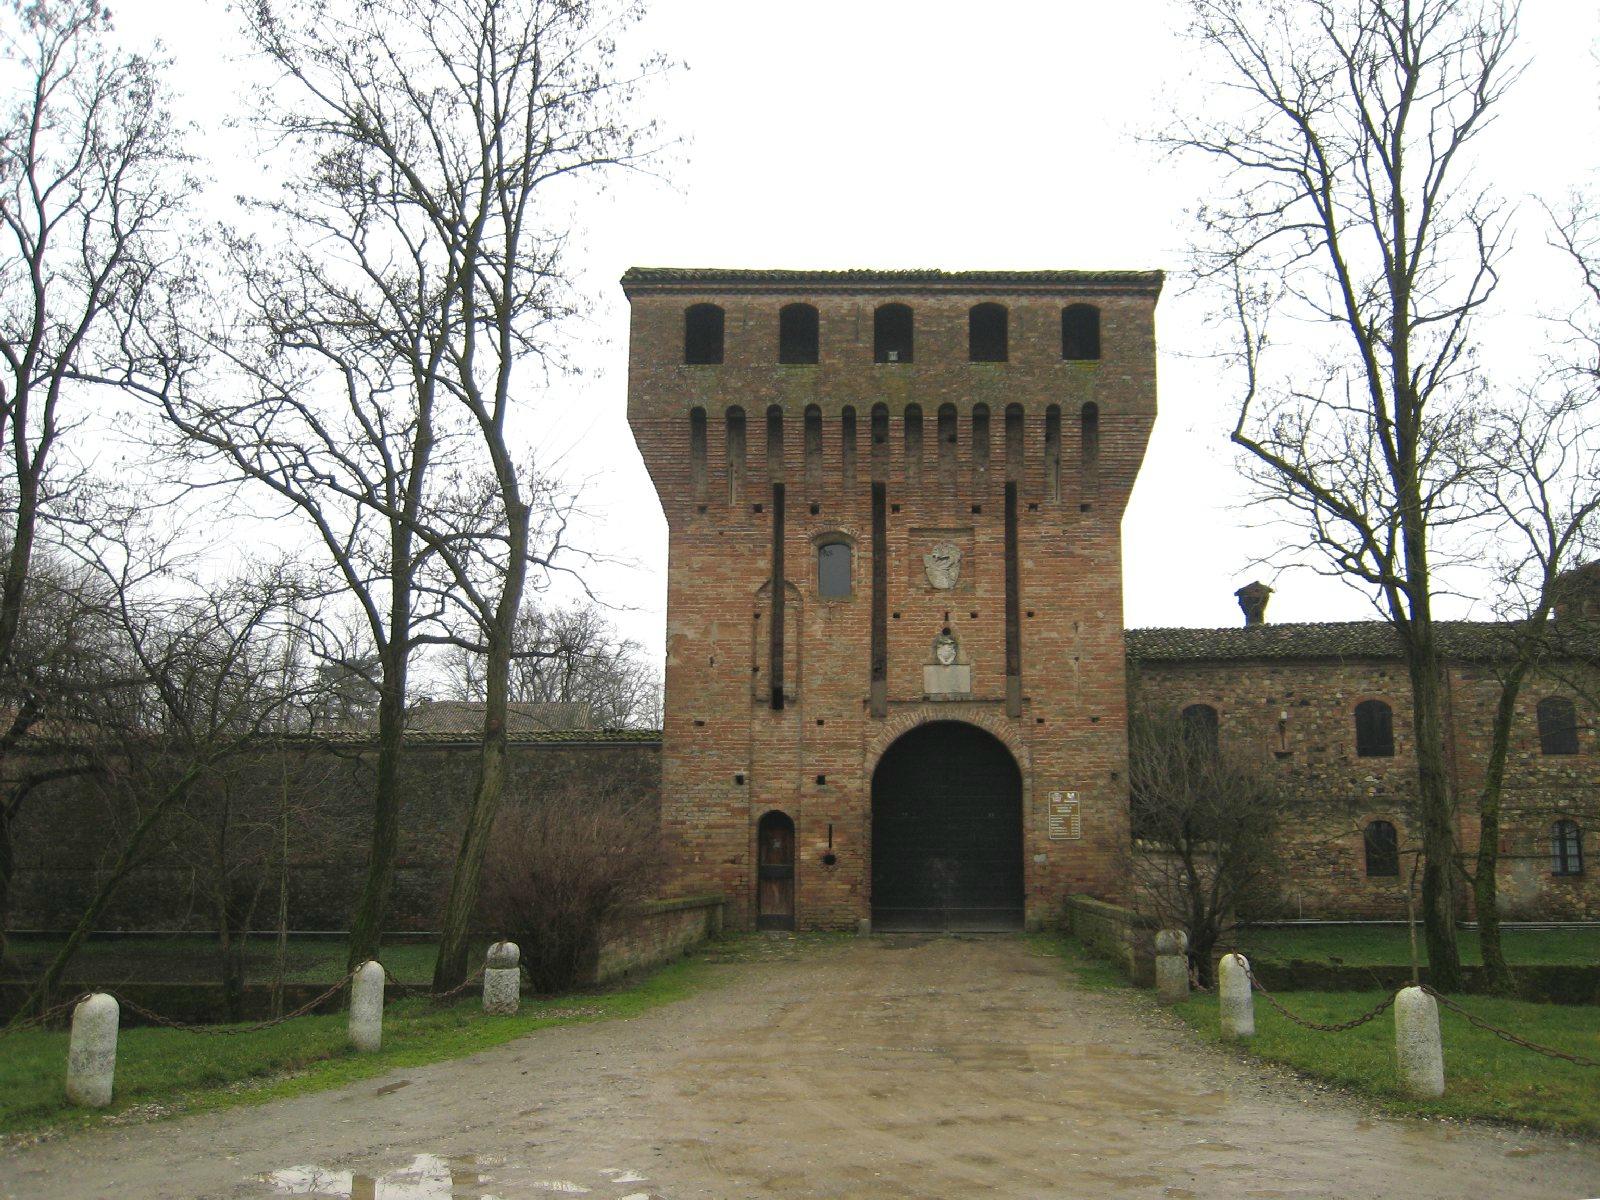 Castello di Paderna